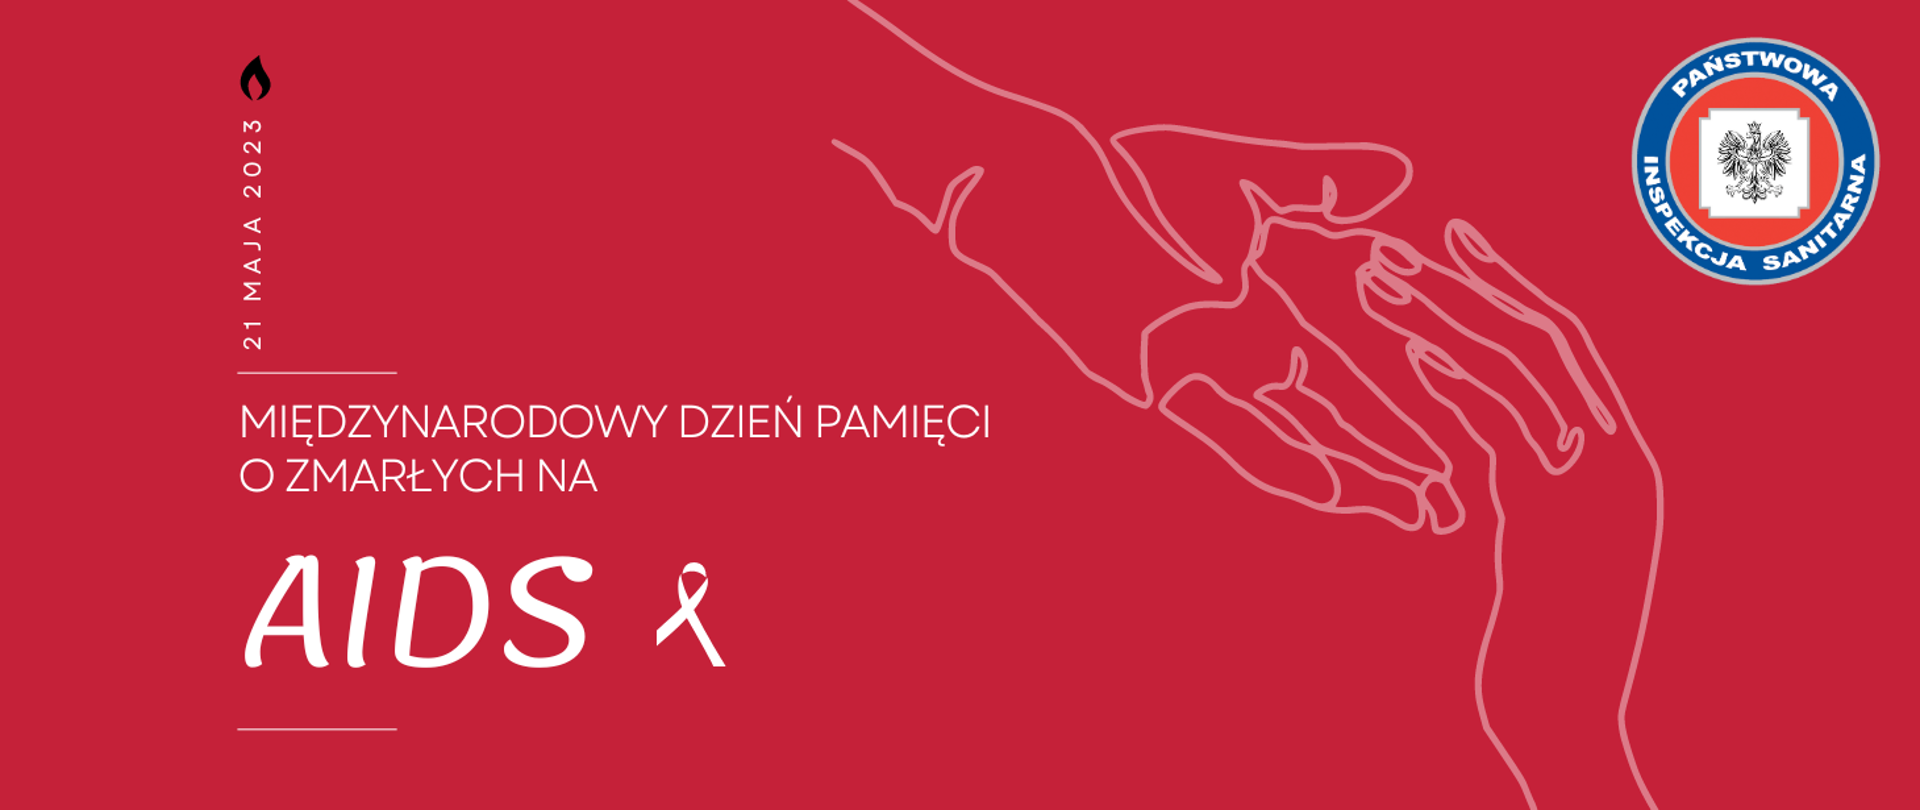 Grafika z tekstem: Międzynarodowy dzień pamięci o zmarłych na AIDS 2023. 21 maja 2023